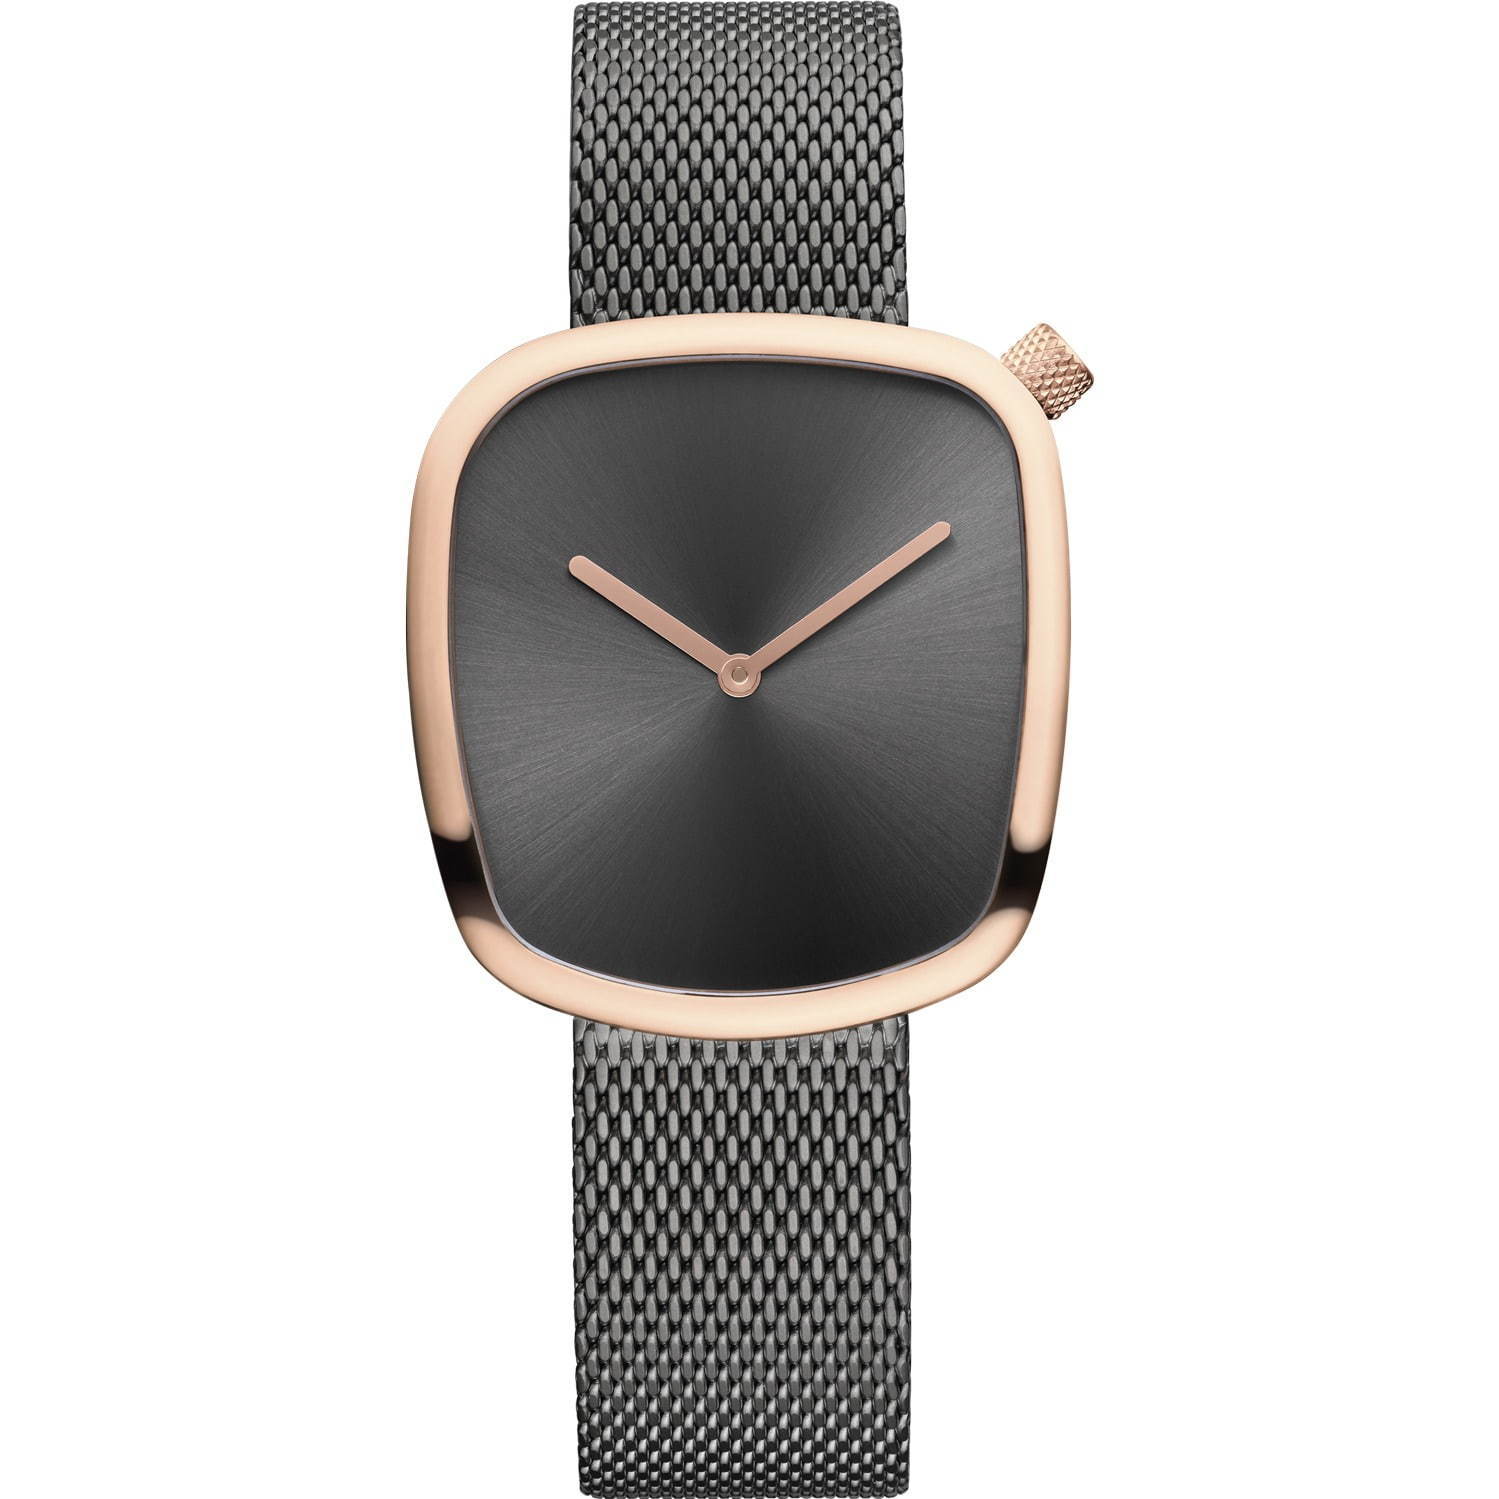 ベーリングの新作腕時計「ぺブルウオッチ」“小石”から着想した有機的な